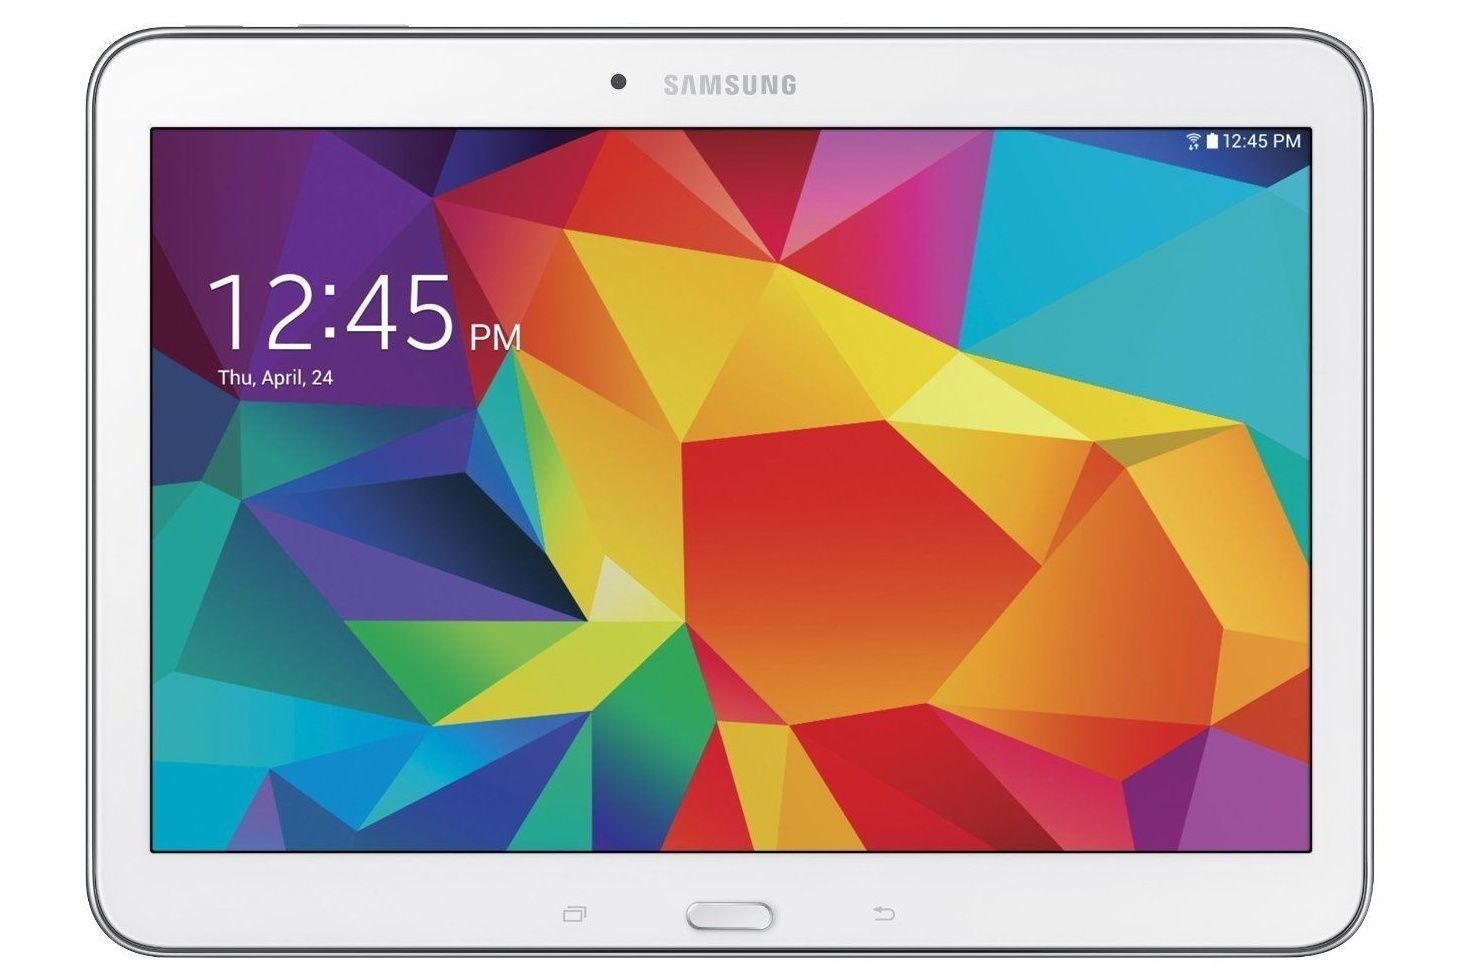 Samsung Galaxy Tab 4 SM-T535 16GB, Wi-Fi + Cellular 10.1" - White